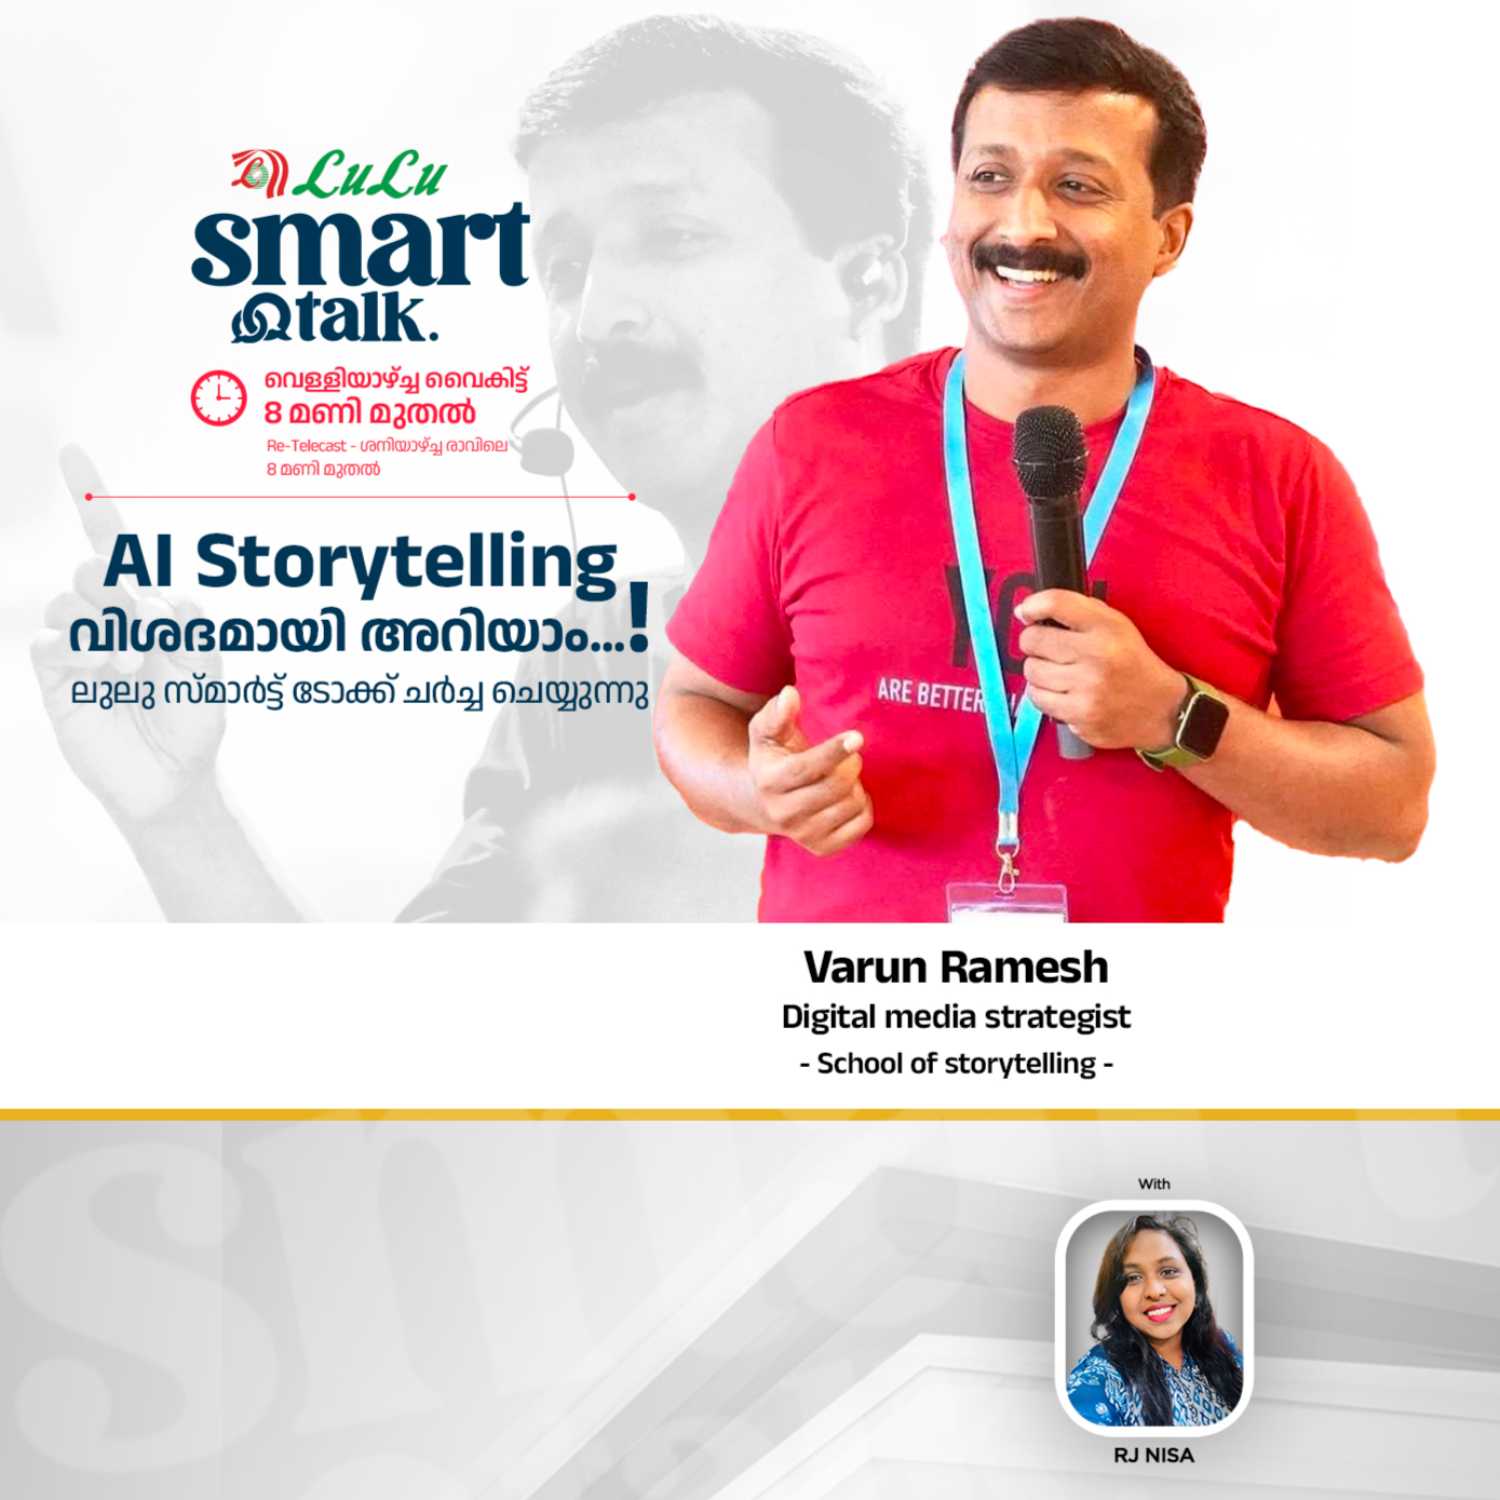 VARUN RAMESH | DIGITAL MEDIA STRATEGIST | SCHOOL OF STORYTELLING | SMART TALK